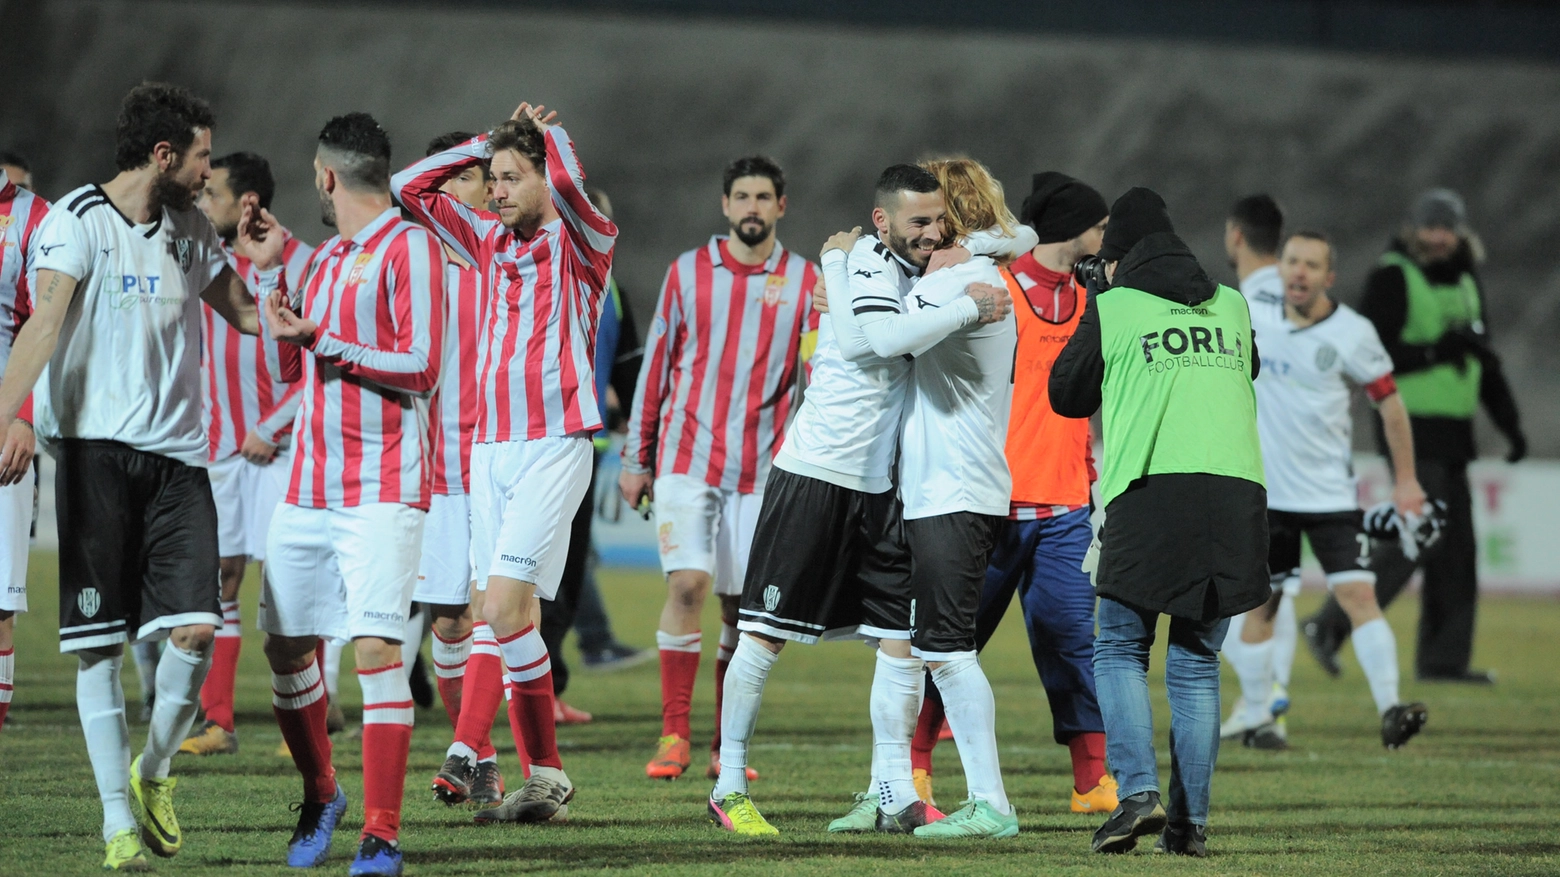 La delusione dei giocatori del Forlì e l'esultanza di quelli del Cesena (foto Frasca)